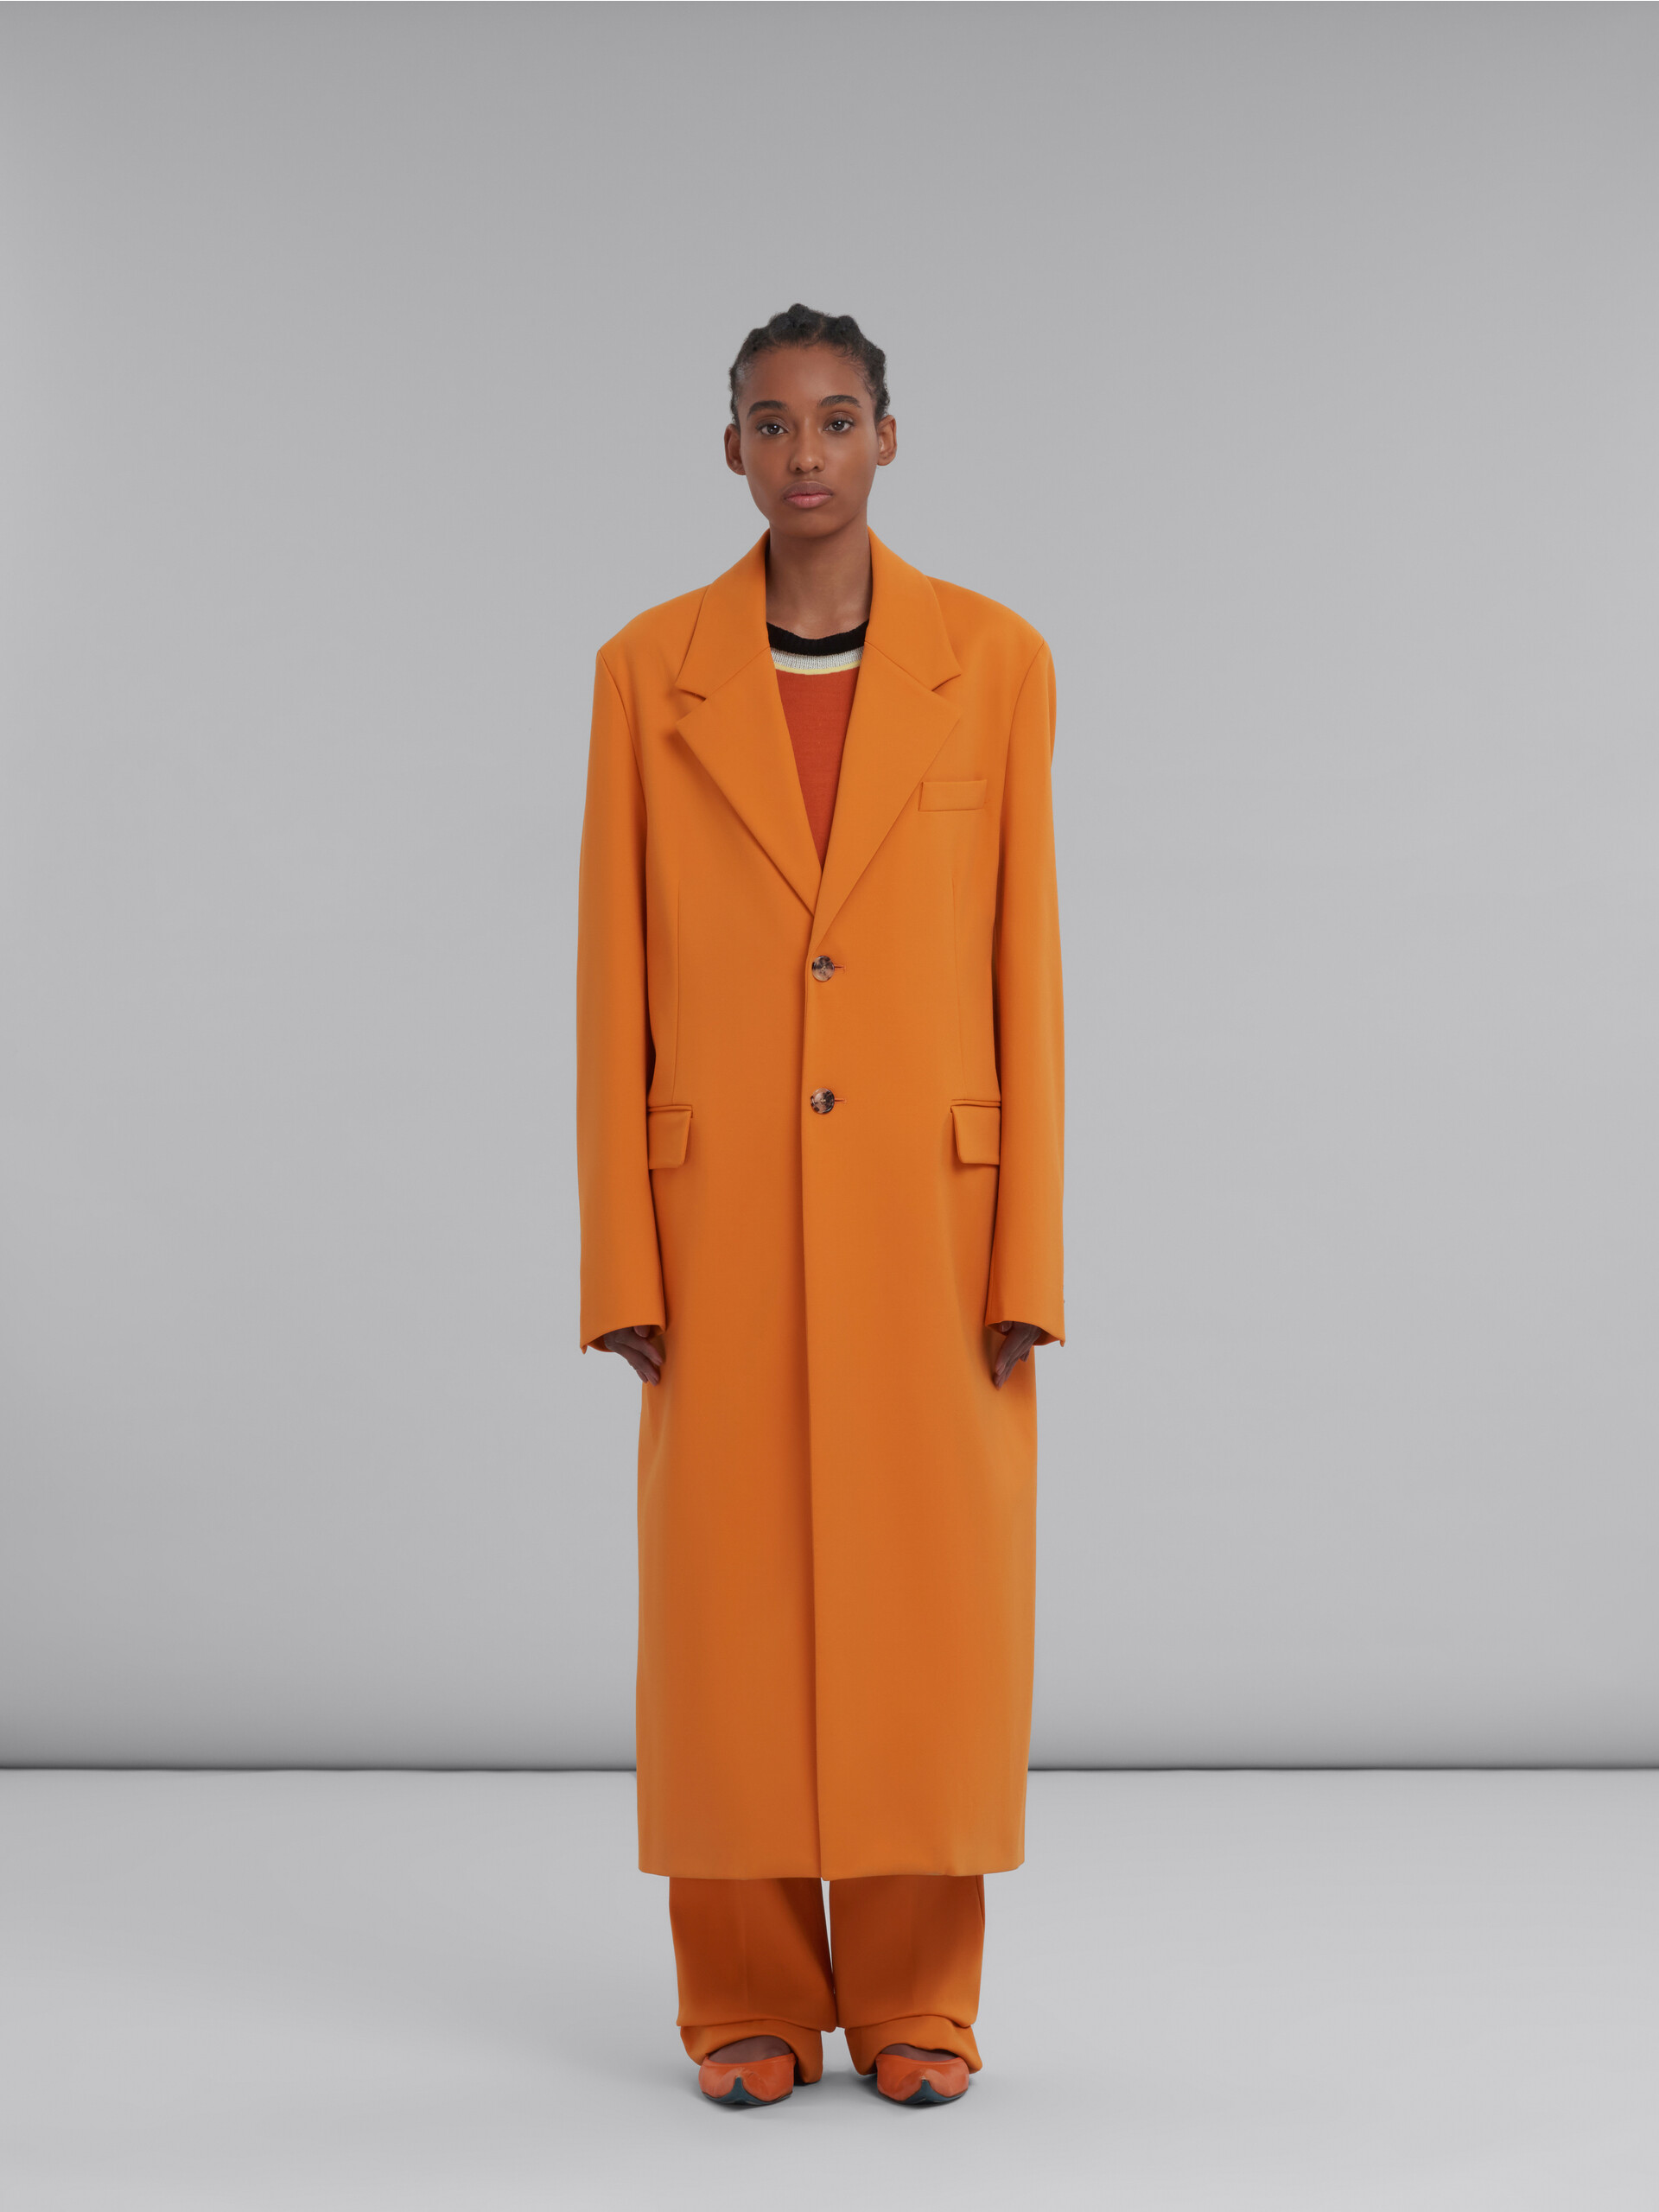 Orange single-breasted jersey coat - Coat - Image 2